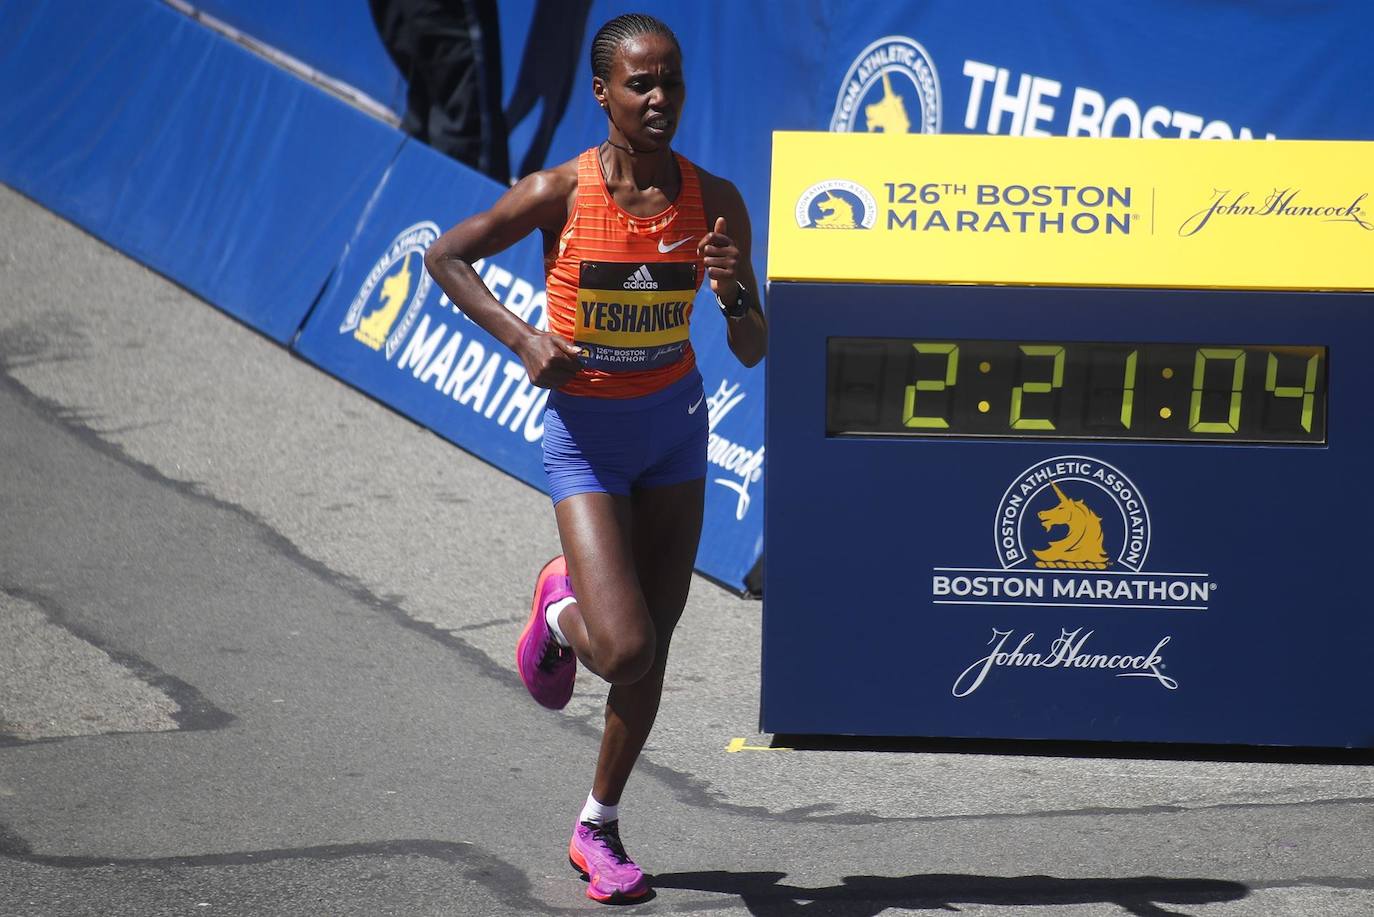 Fotos: Las imágenes más destacadas de la Maratón de Boston